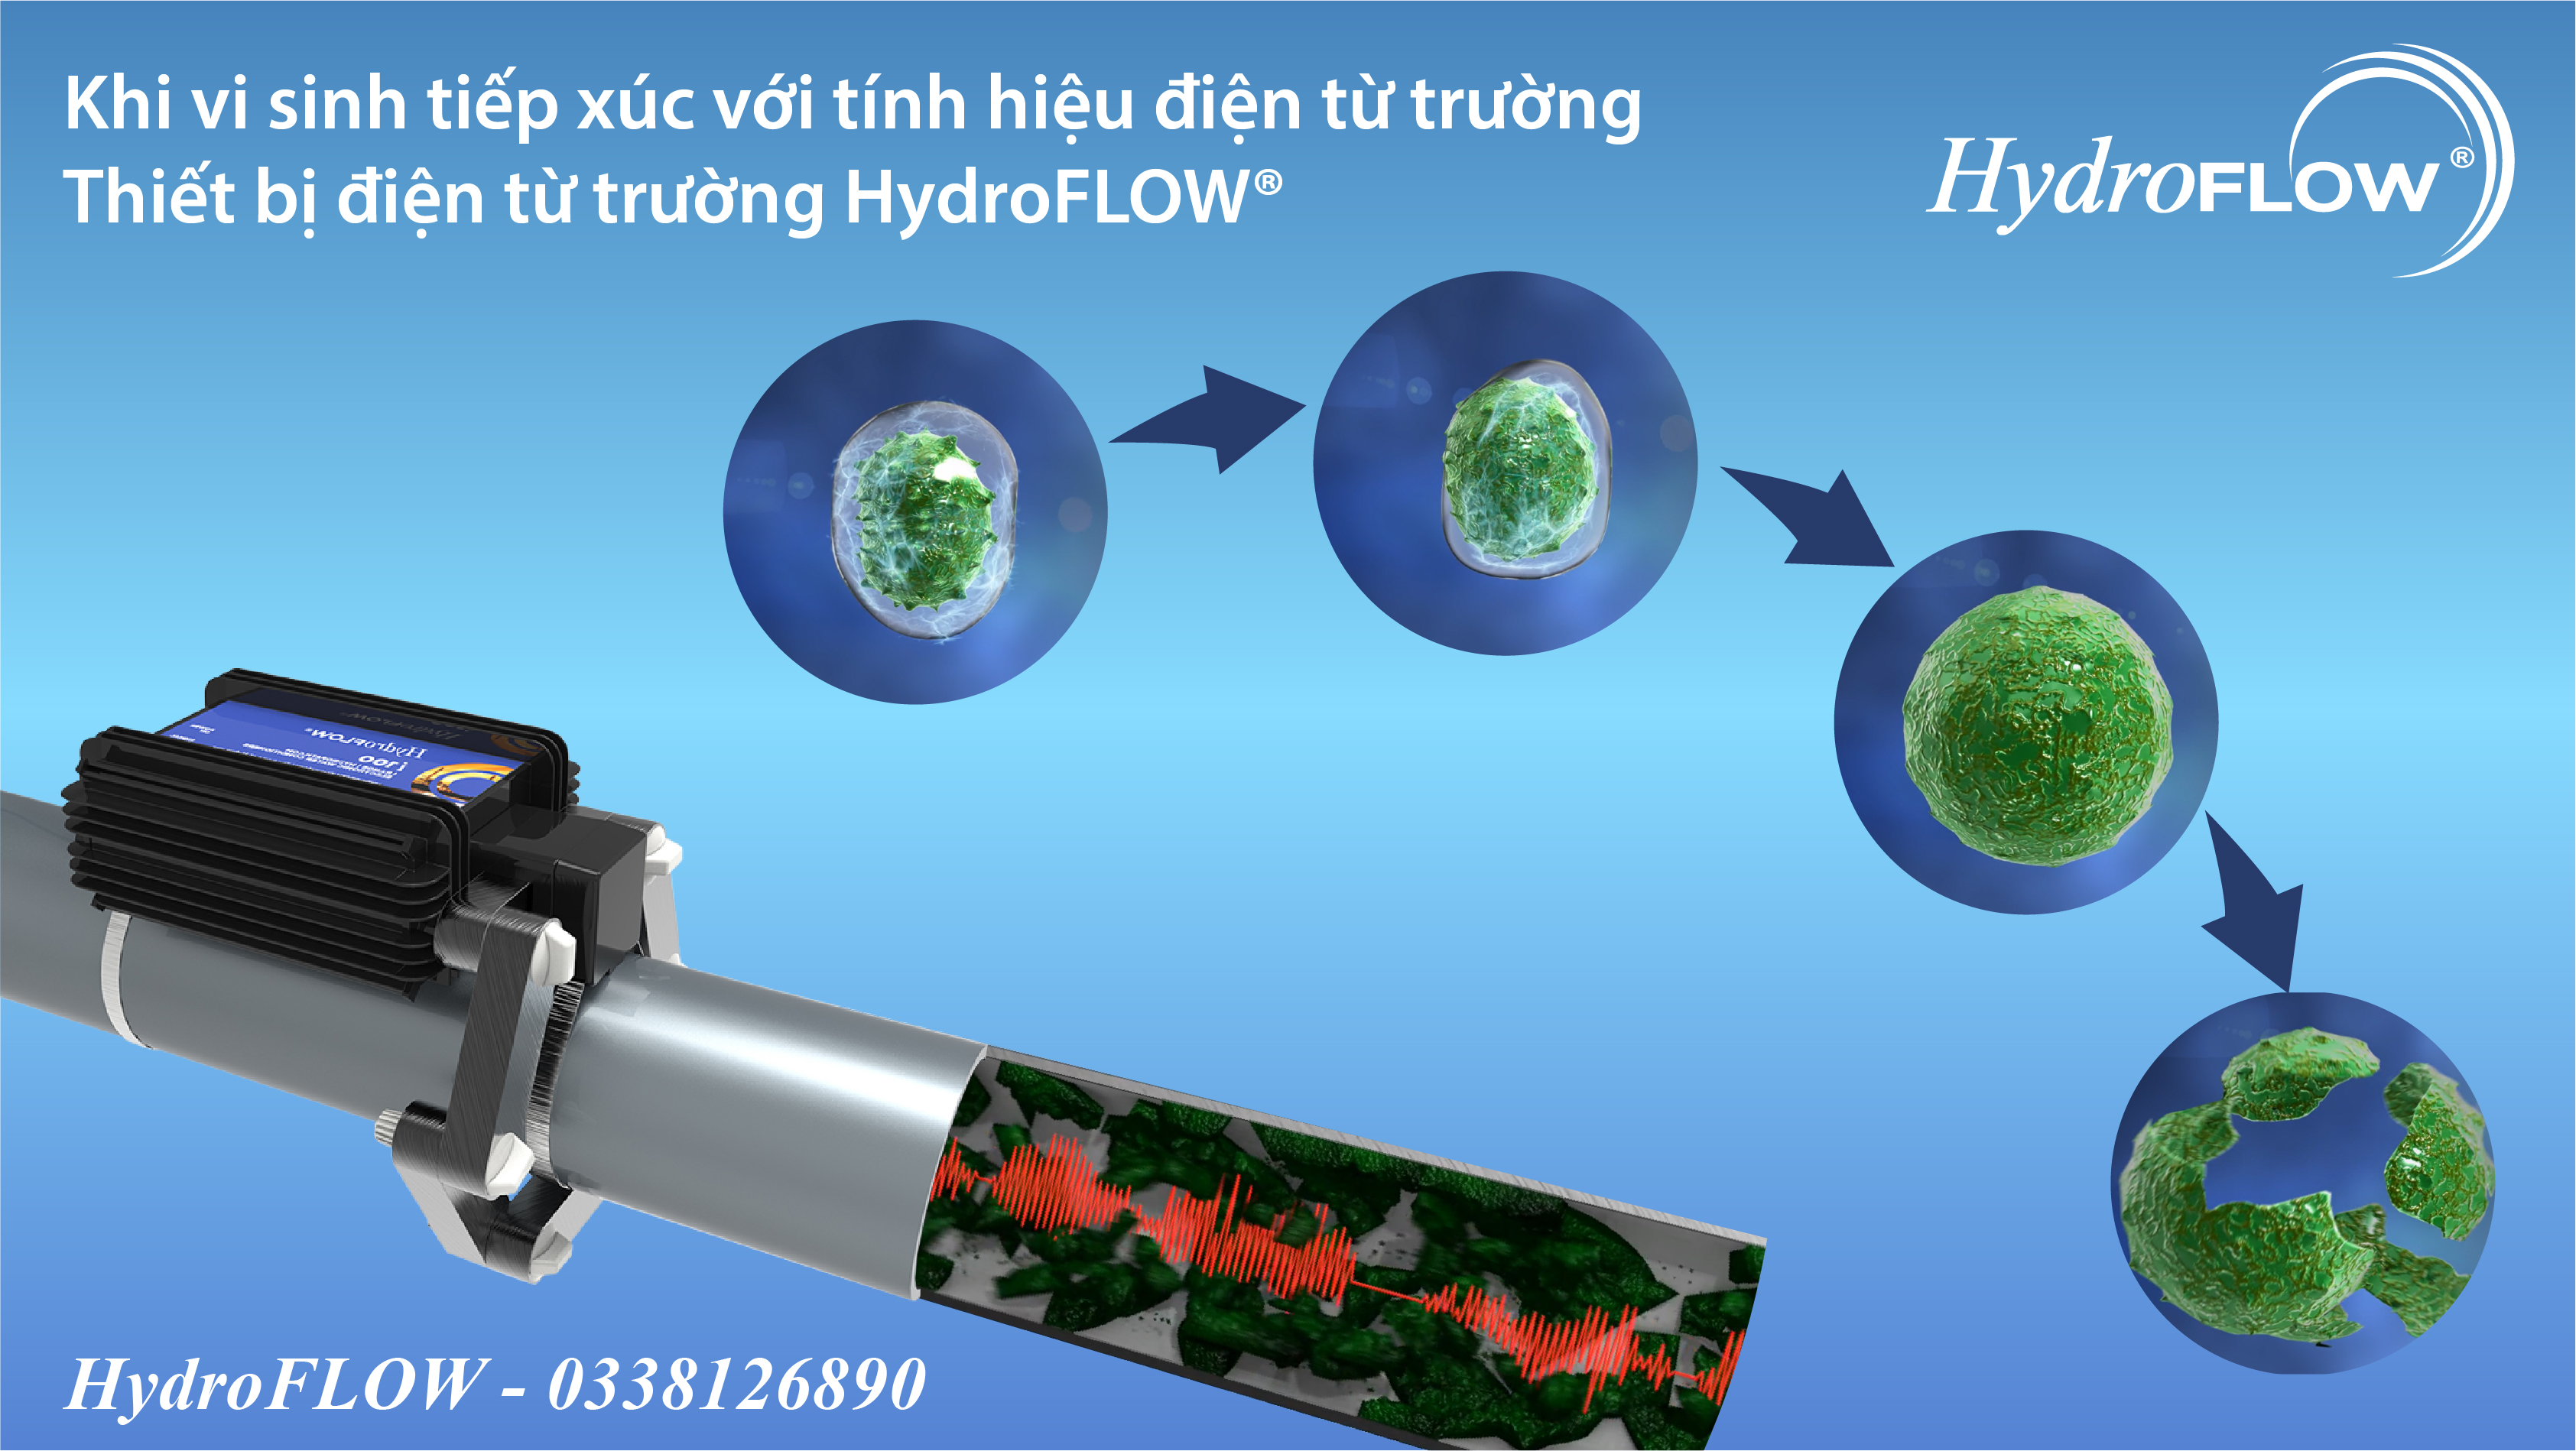 Thiết bị điện từ trường HydroFlow giúp loại bỏ mảng bám vi thành ống